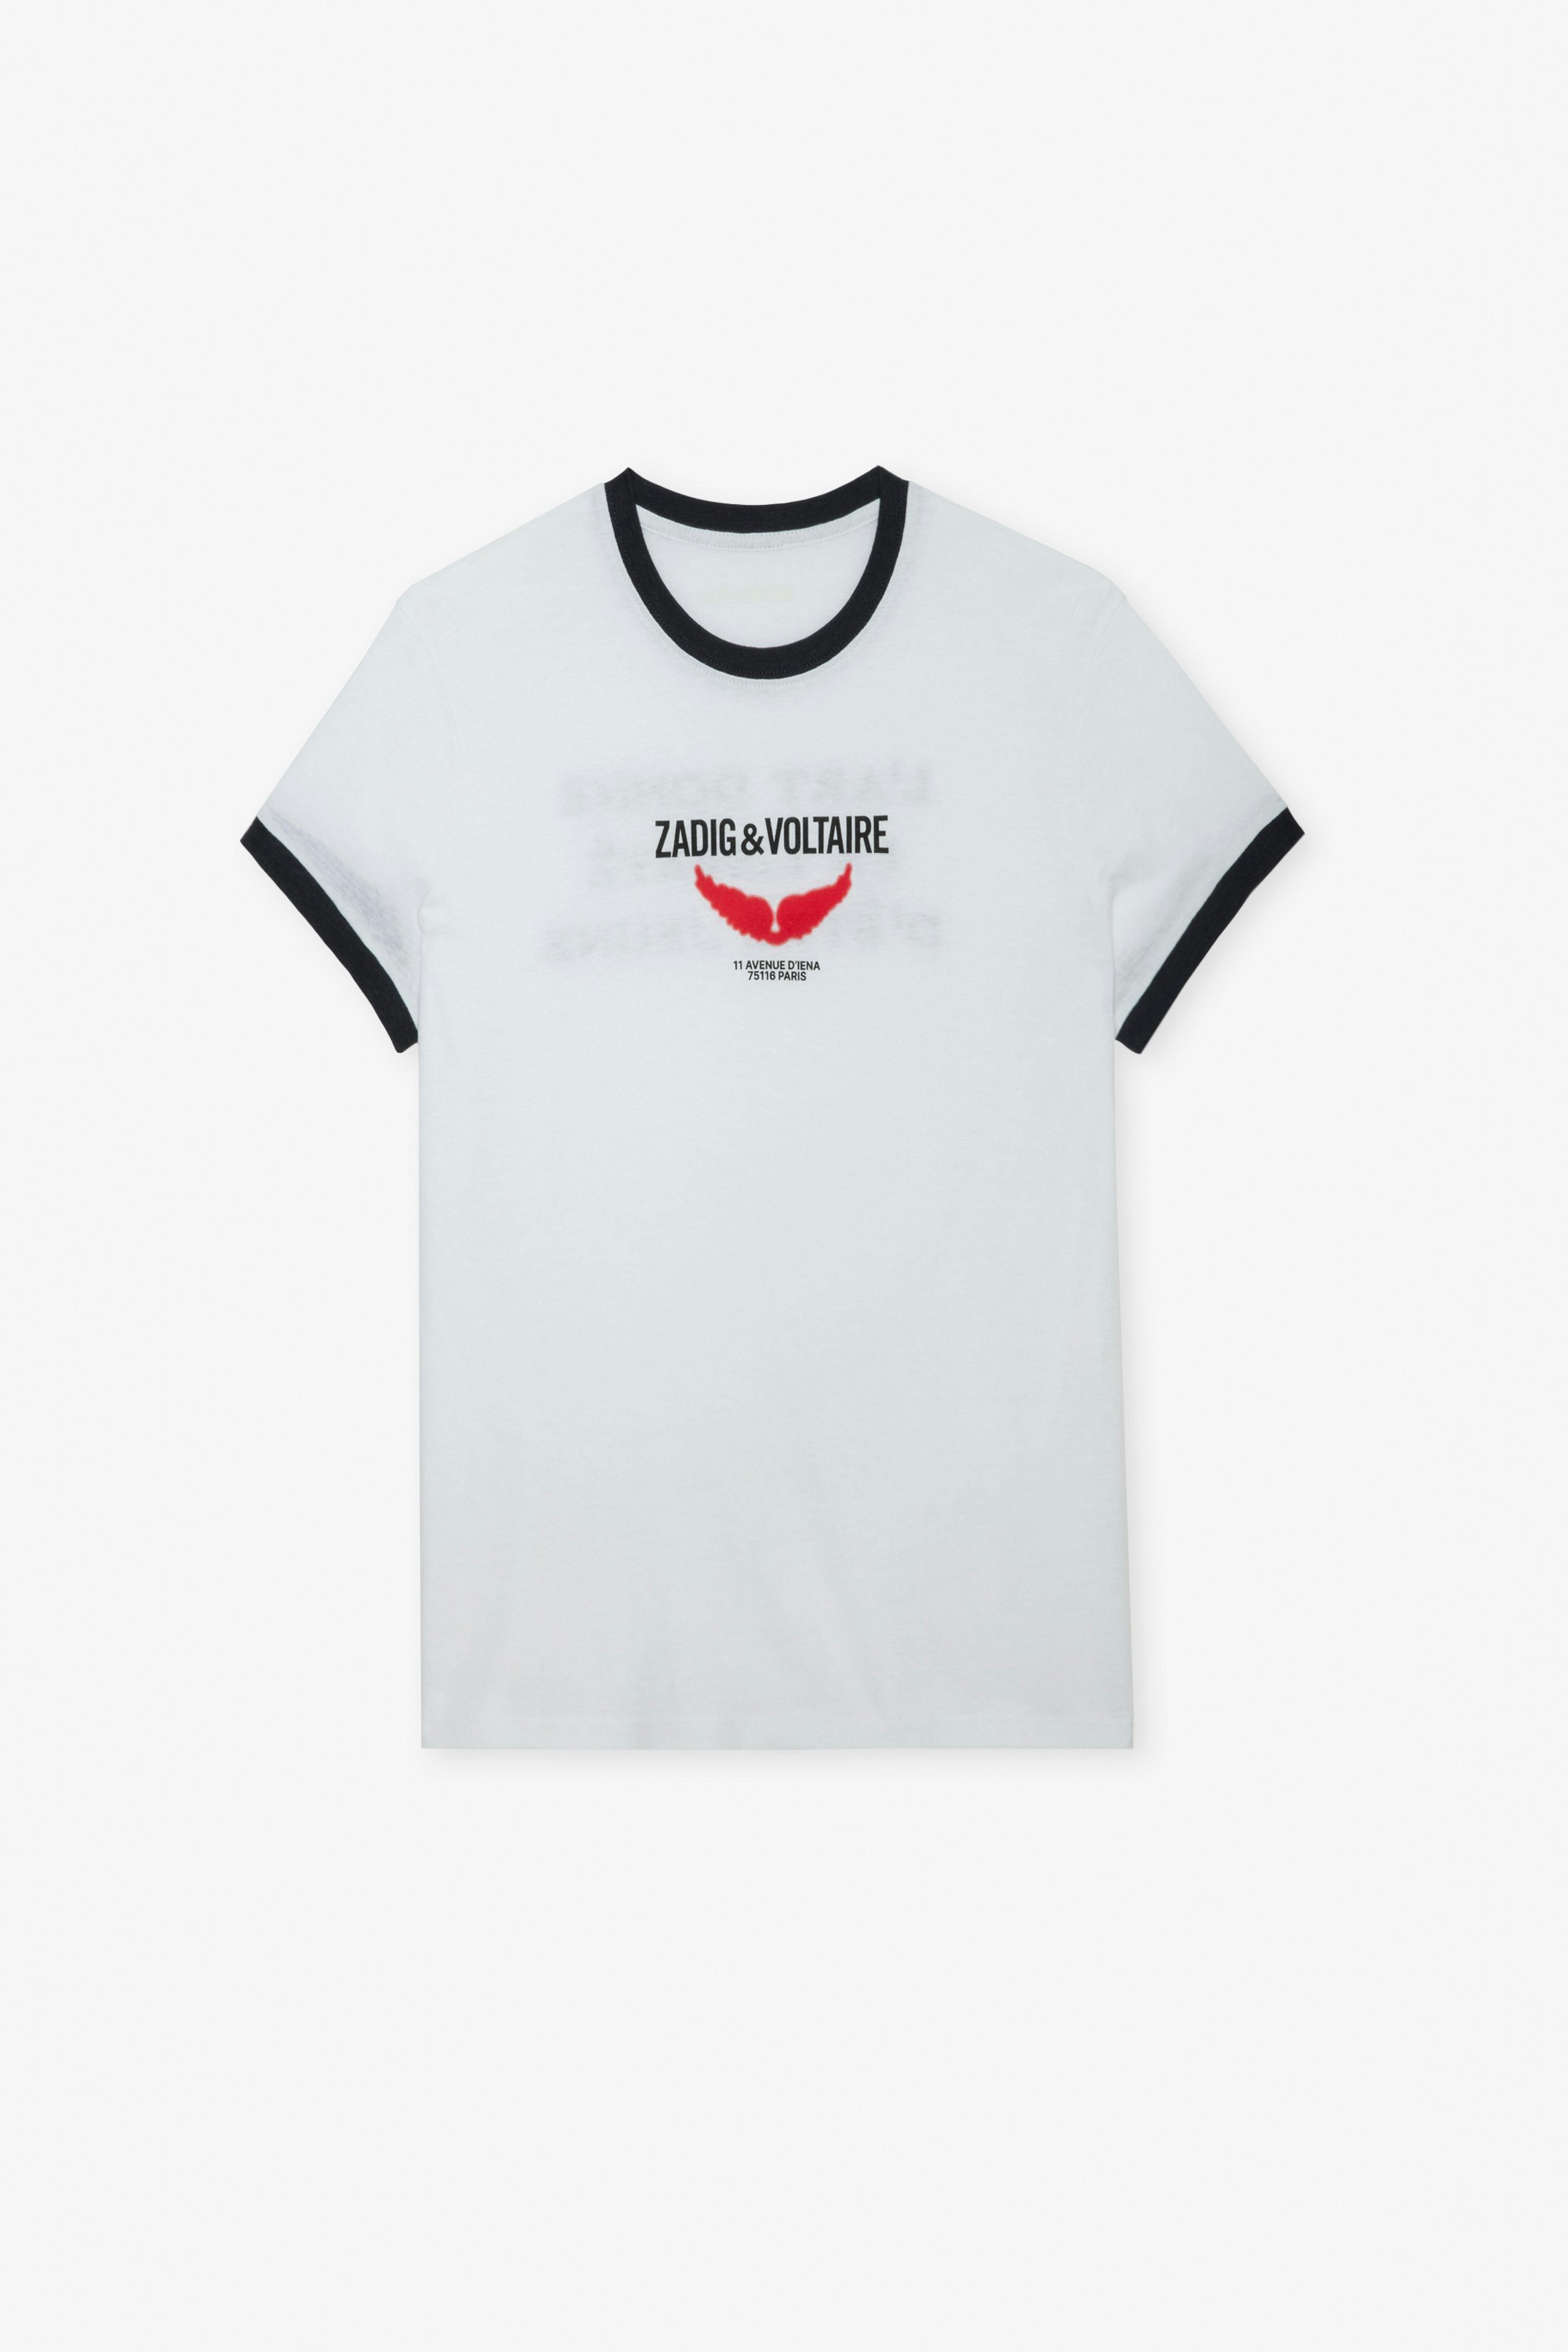 Zoe Wings Liberté T-shirt Women’s white T-shirt with contrasting trim, wings motif and the slogan “L’art donne la liberté d’être jeune”.